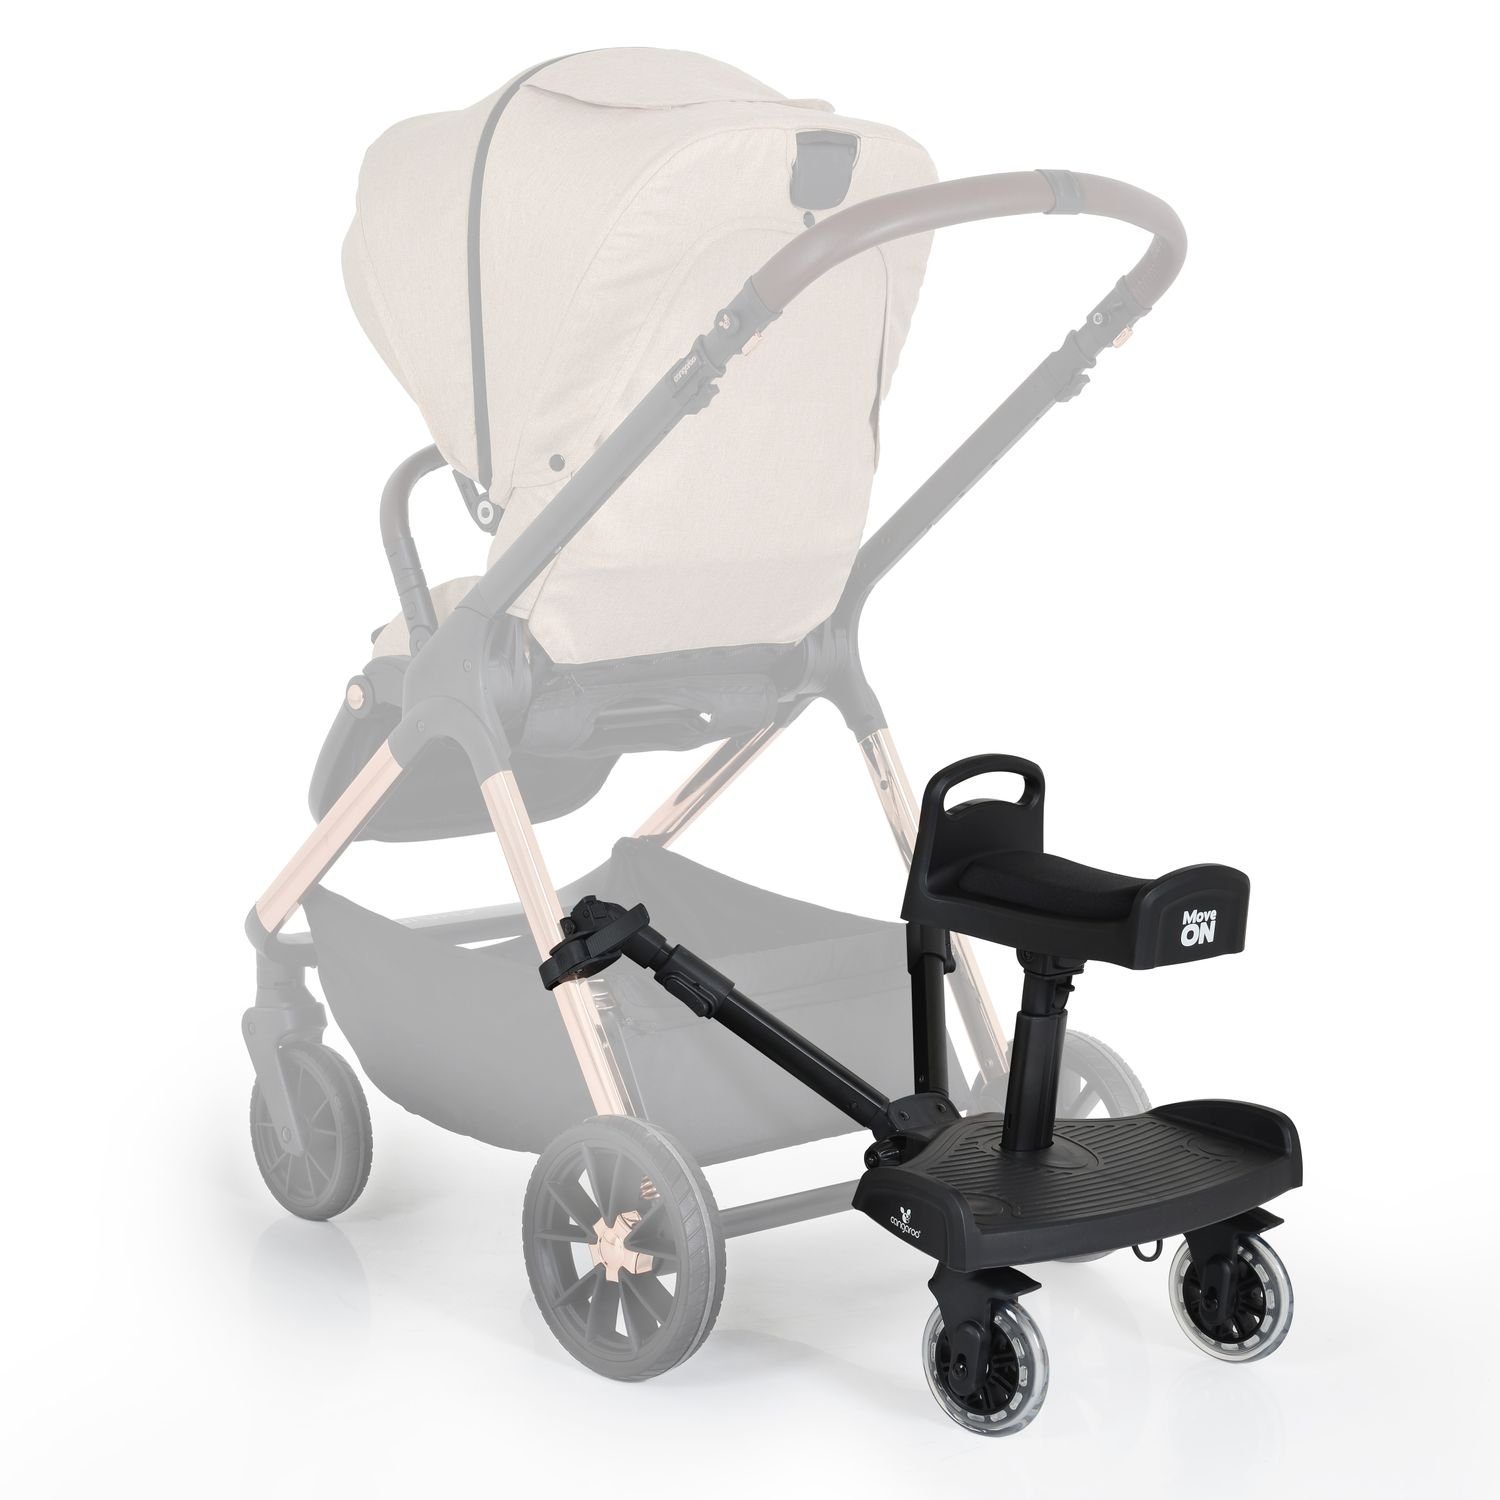 Cangaroo Kinderwagenaufsatz Move universelle mit Sitz, Montage Trittbrett Kinderwagenaufsatz on